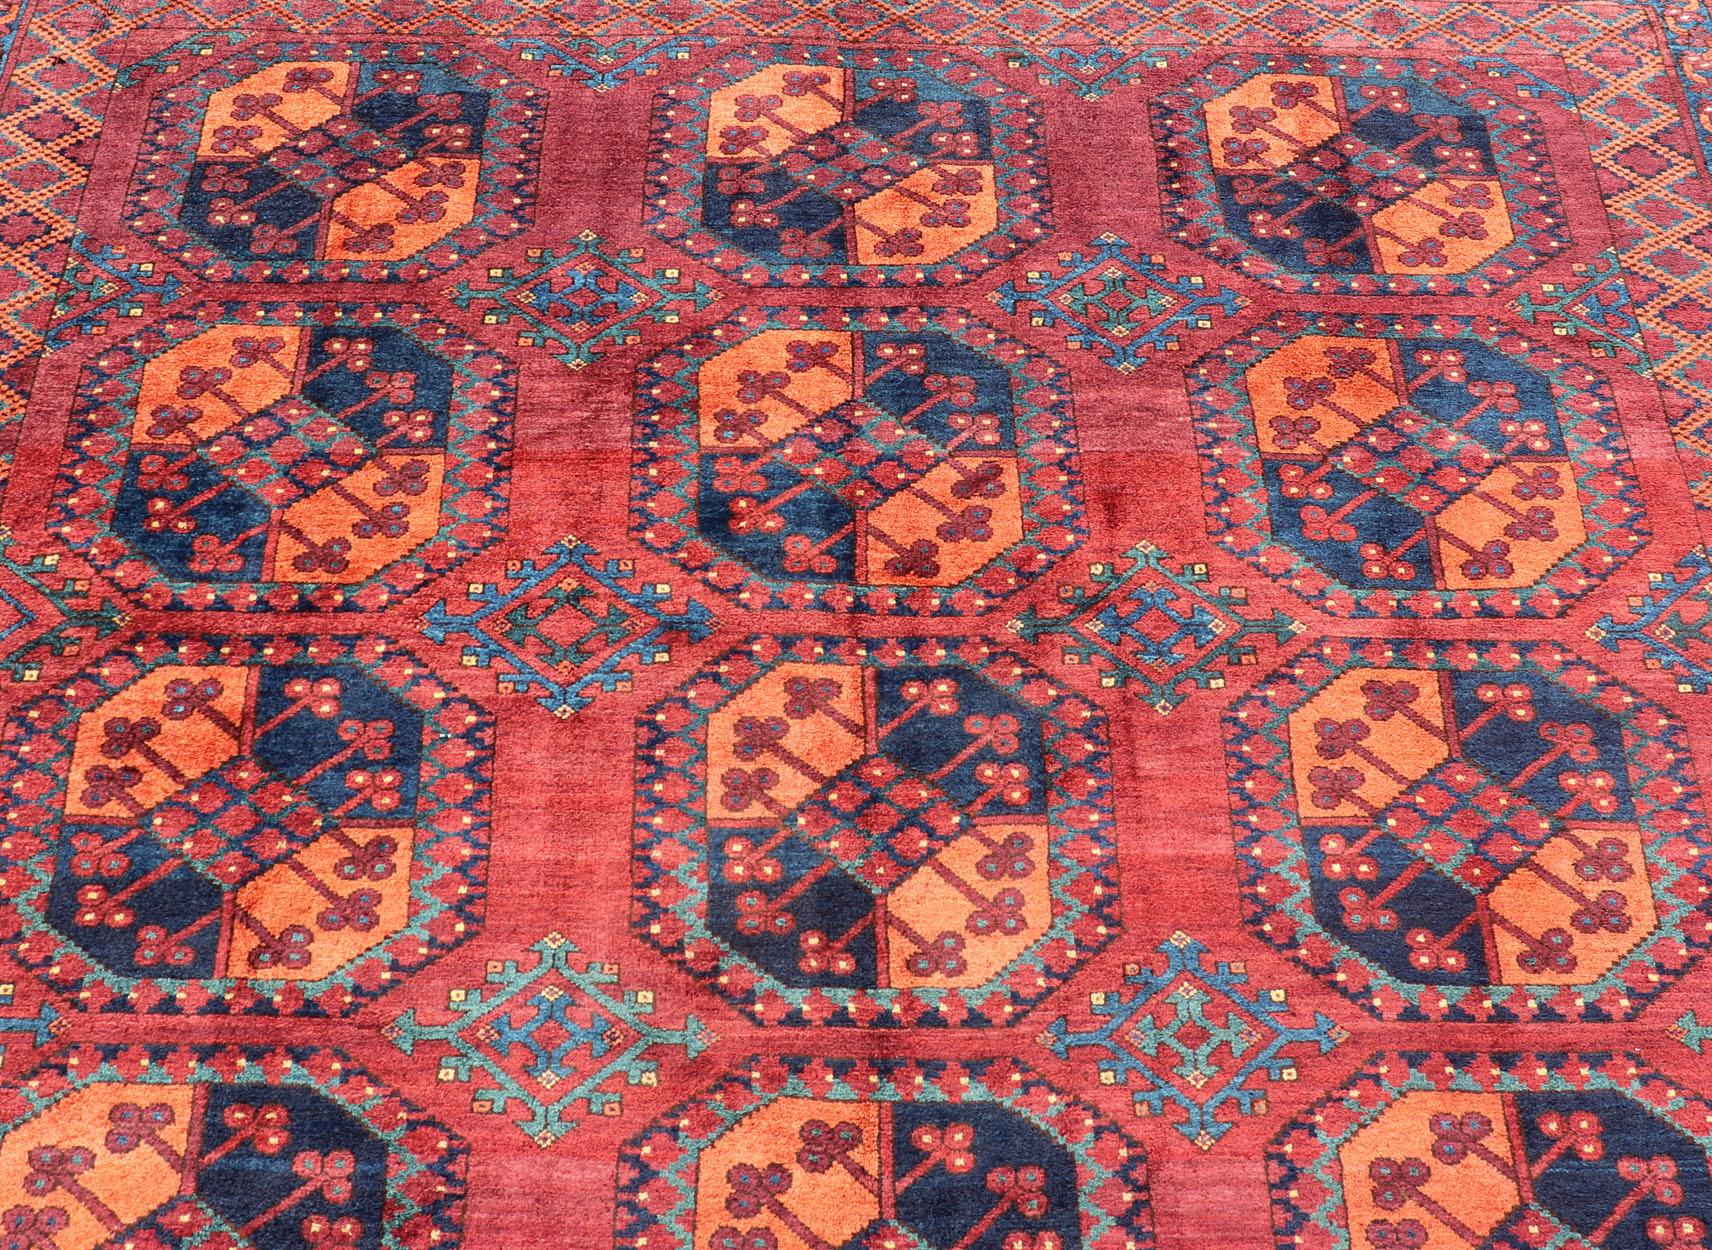 Dieser türkische Ersari-Teppich wurde aus feinster Wolle handgeknüpft. Der Teppich weist ein sich wiederholendes subgeometrisches Gul-Muster auf, das sich über den gesamten Teppich erstreckt und von einer komplementären, mehrstufigen Bordüre mit